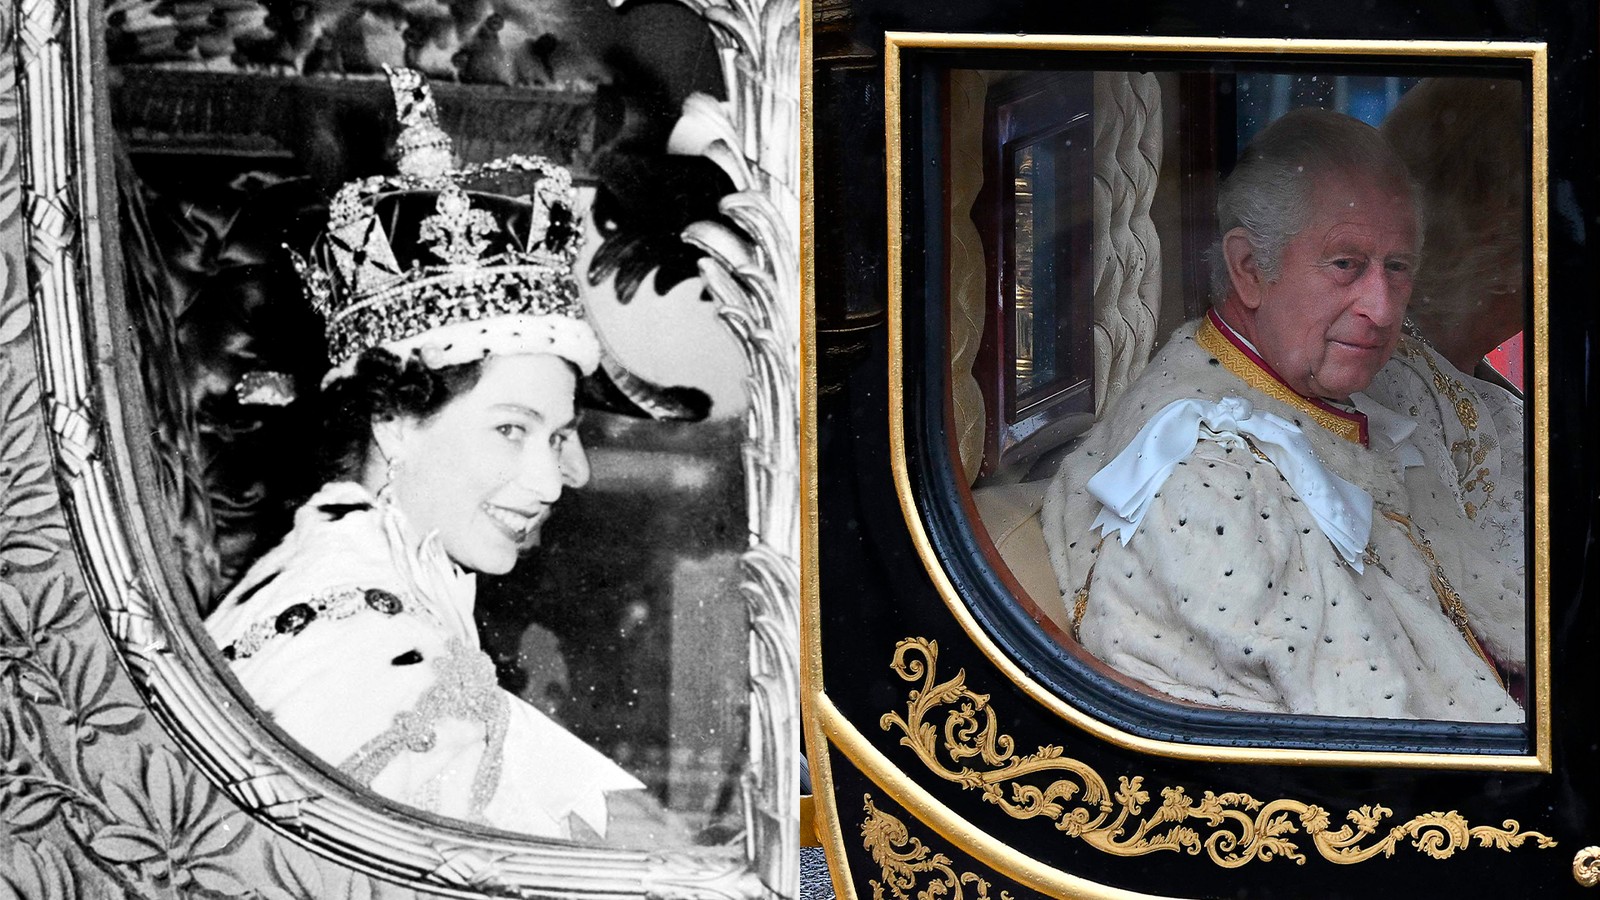 Passado e presente em imagens: as coroações de Elizabeth, em 1953, e de Charles, neste sábado, marcam começos e fins de ciclos no Reino Unido  — Foto: Arquivo AFP / Glyn KIRK / AFP